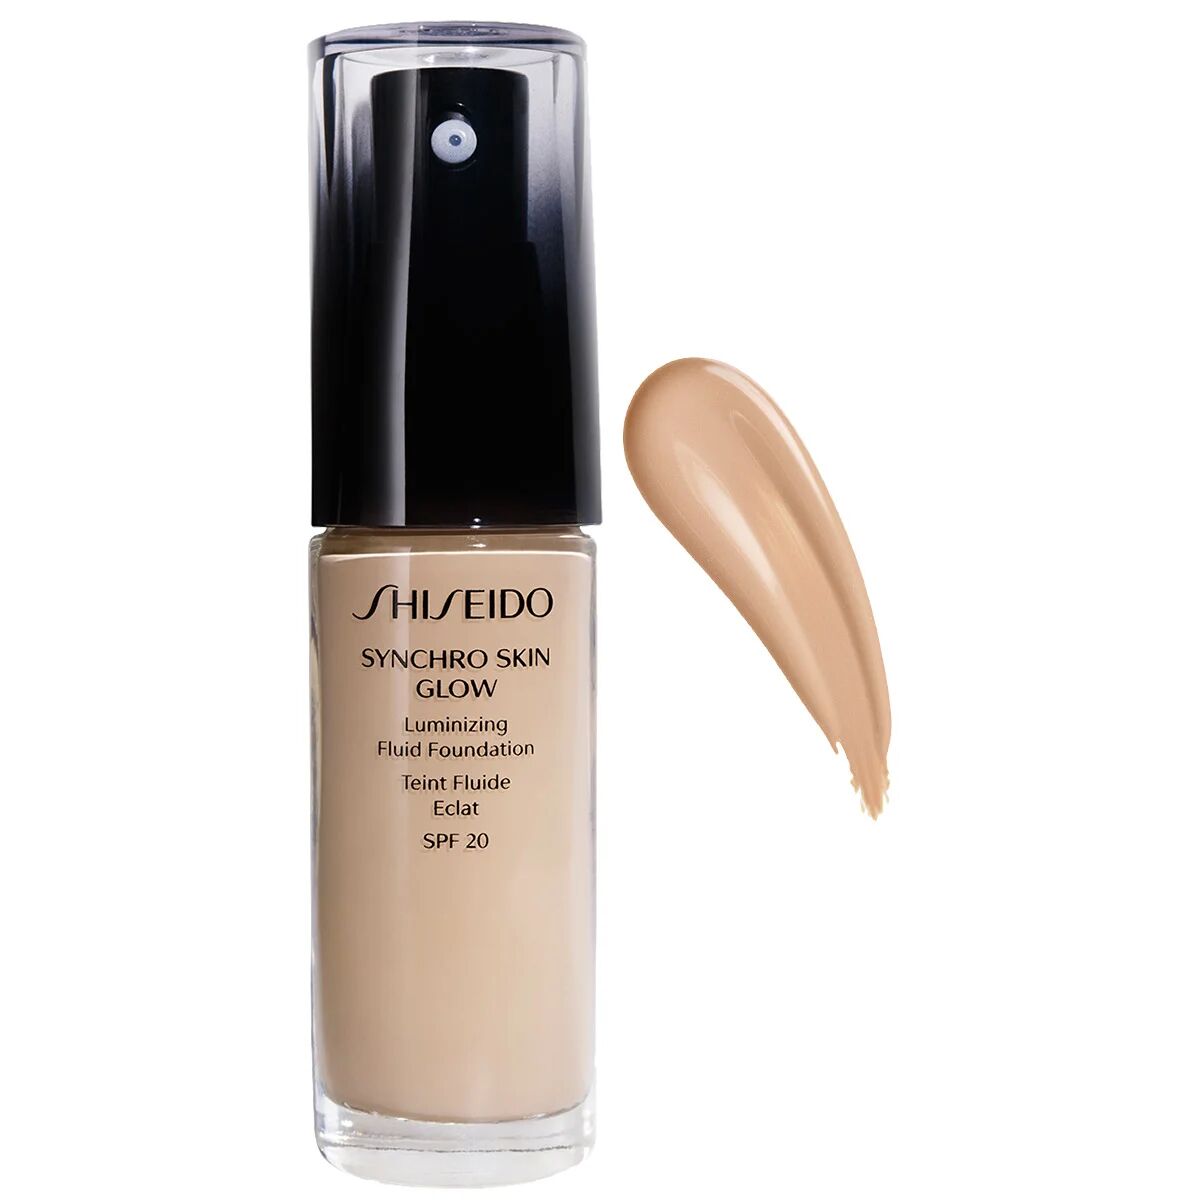 Shiseido Synchro Skin Glow Luminizing Fluid Foundation, 30 ml Shiseido Foundation